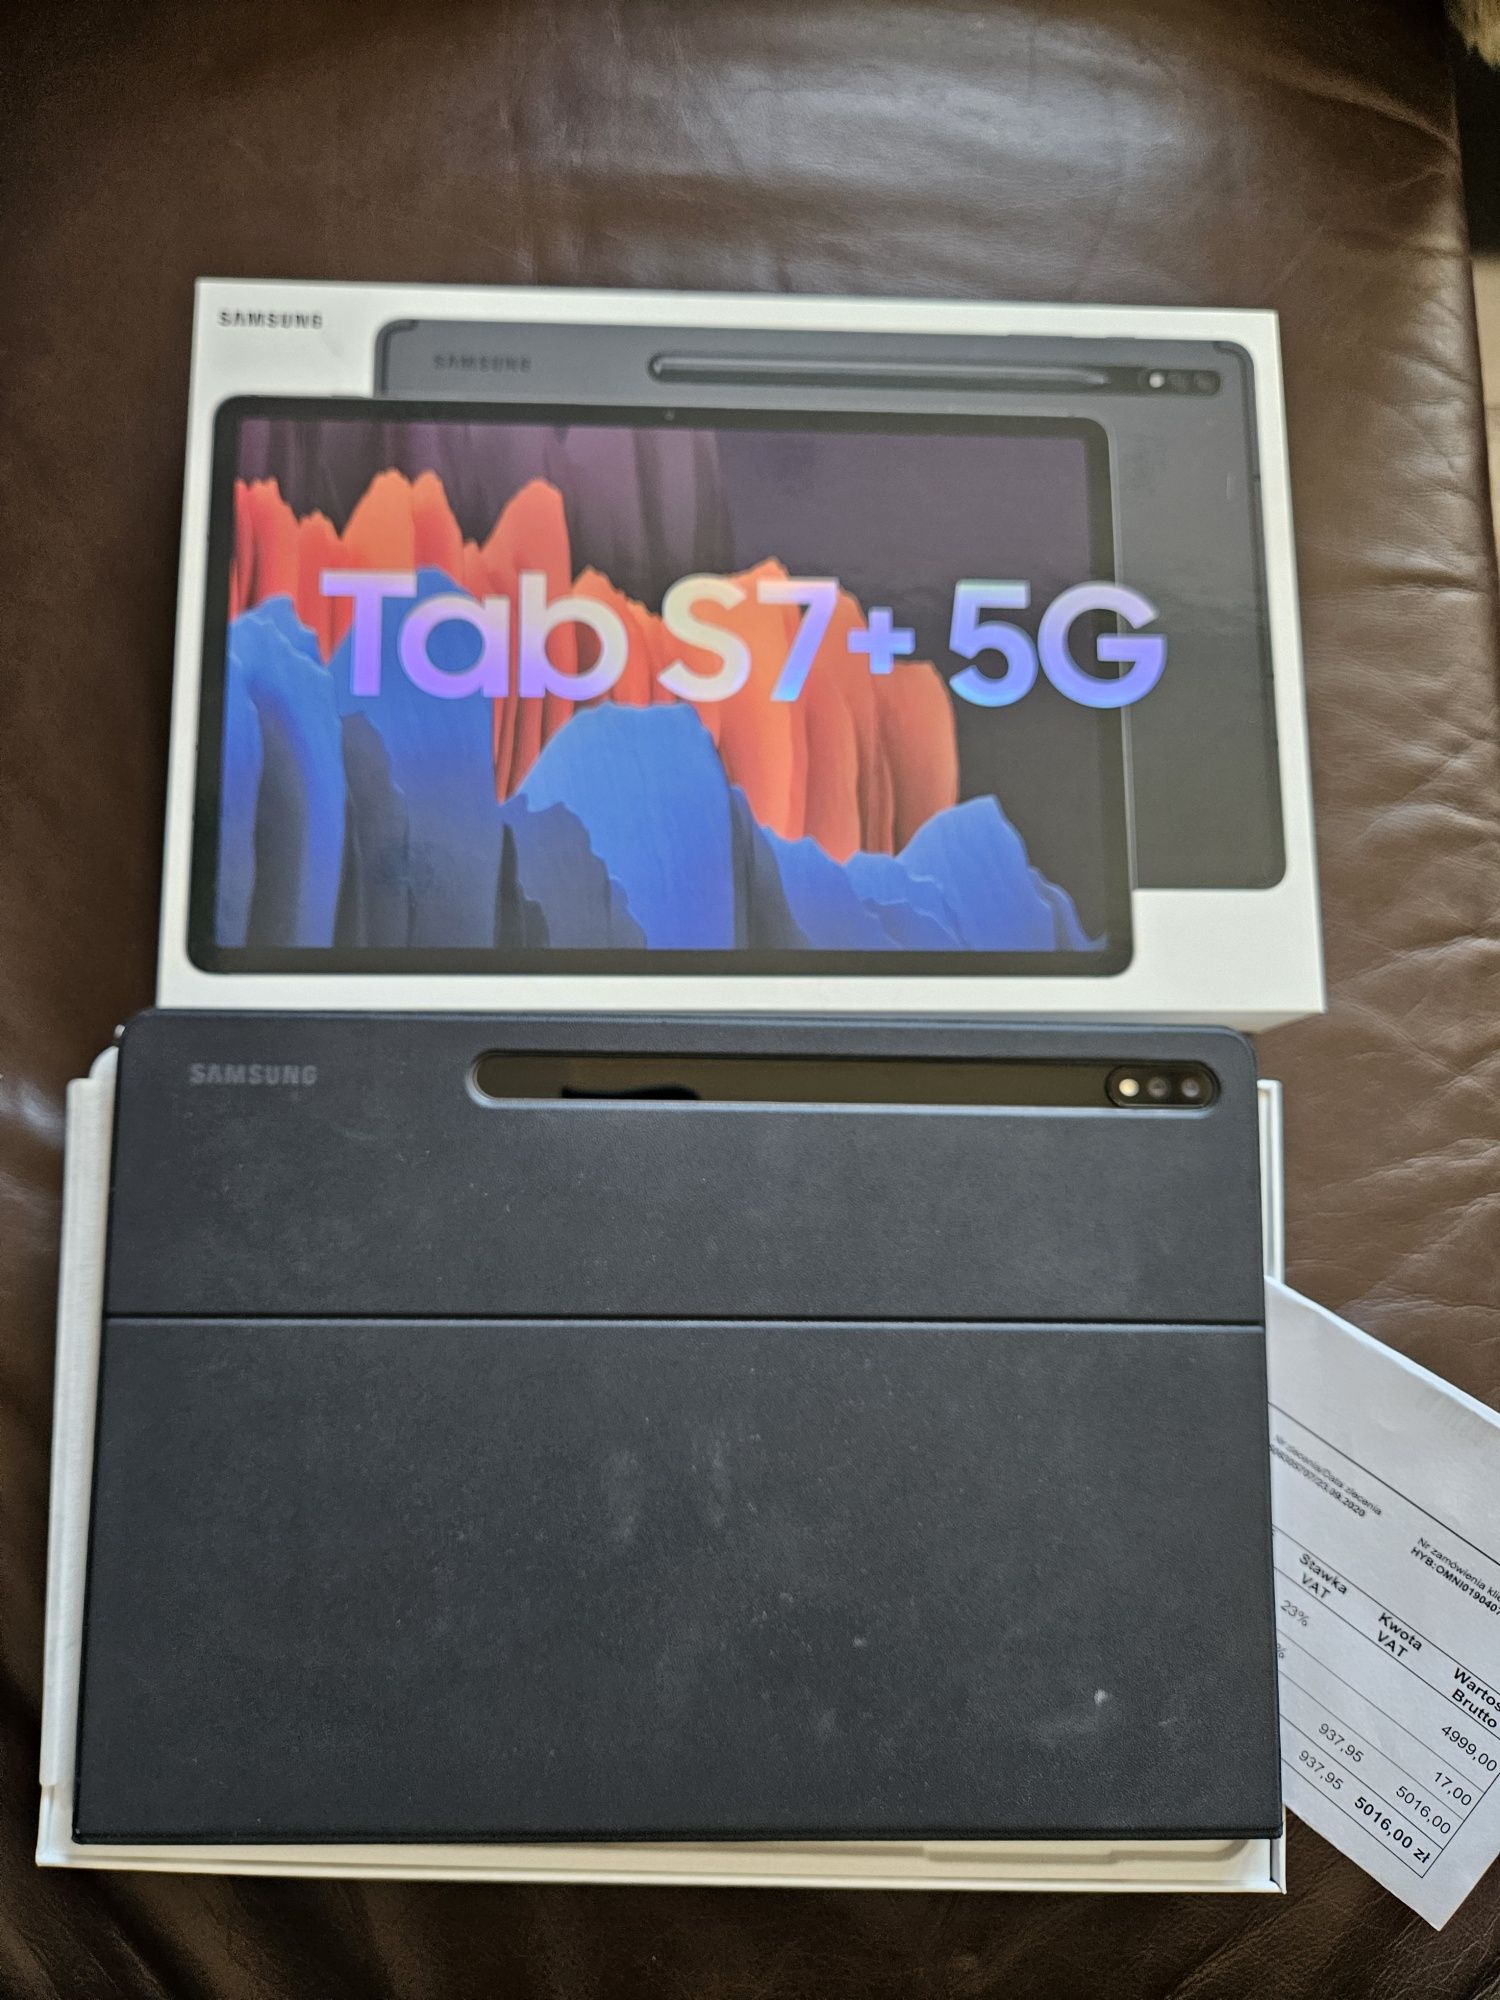 Samsung TAB S7+ 5G